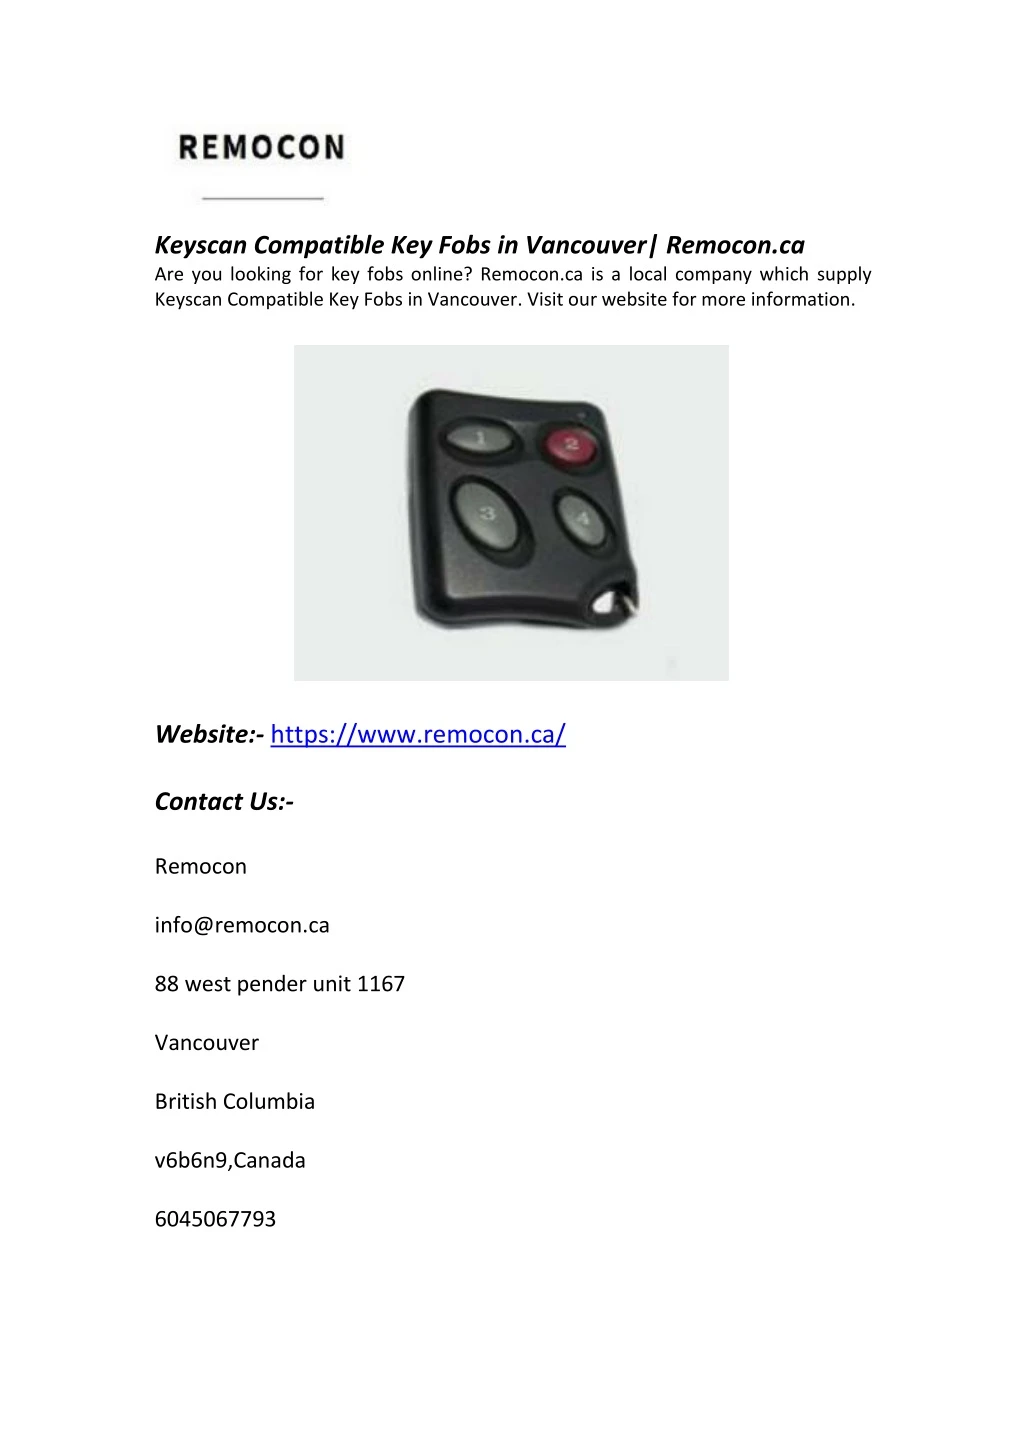 keyscan compatible key fobs in vancouver remocon